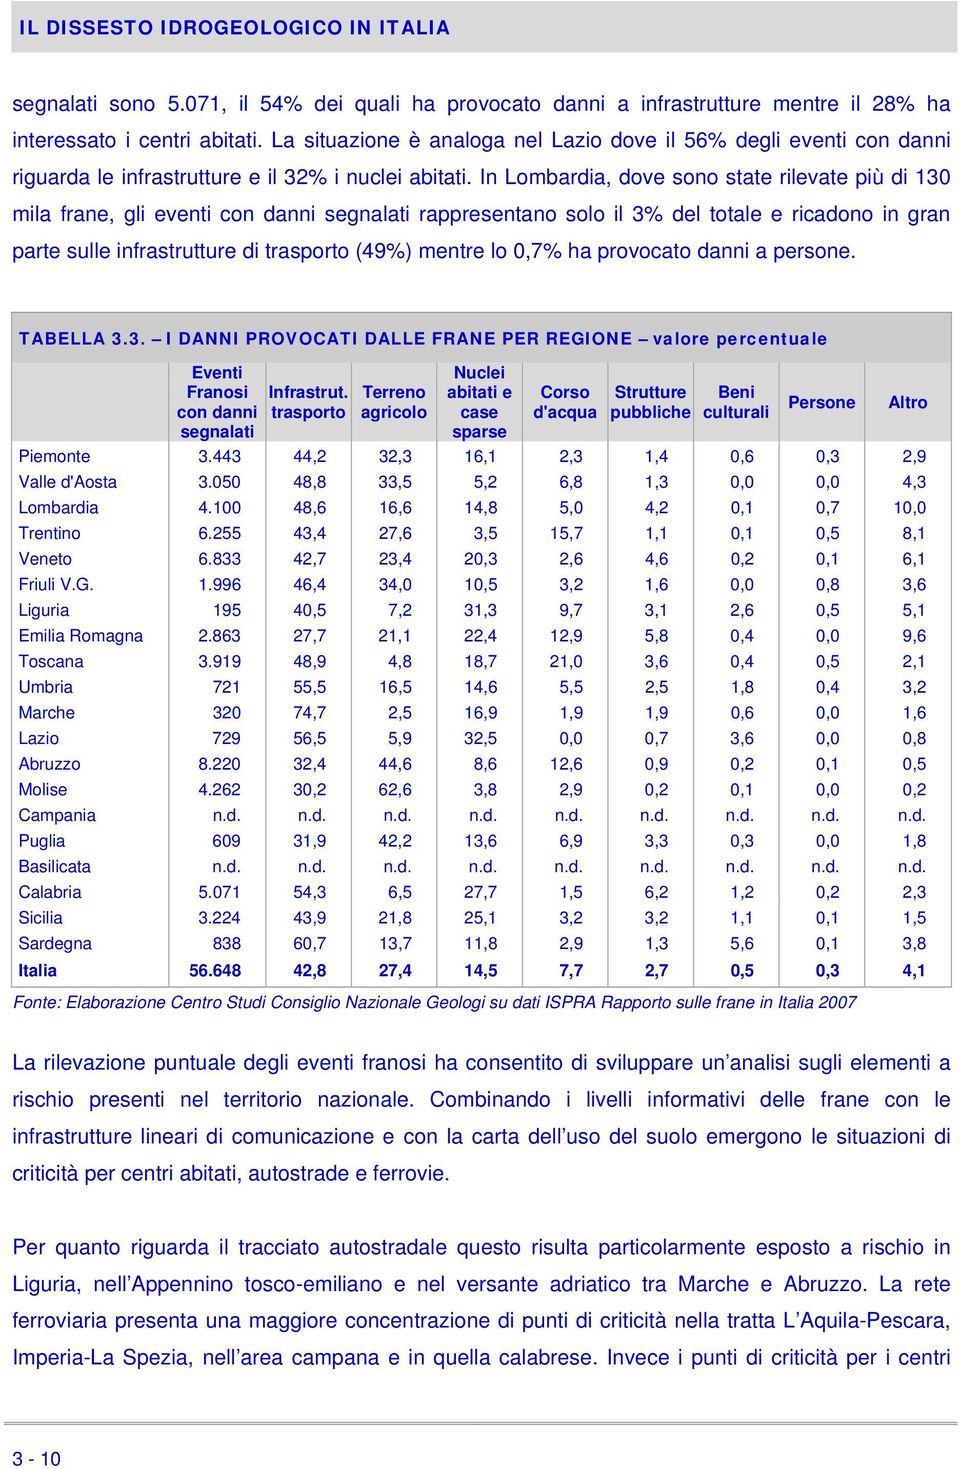 In Lombardia, dove sono state rilevate più di 130 mila frane, gli eventi con danni segnalati rappresentano solo il 3% del totale e ricadono in gran parte sulle infrastrutture di trasporto (49%)